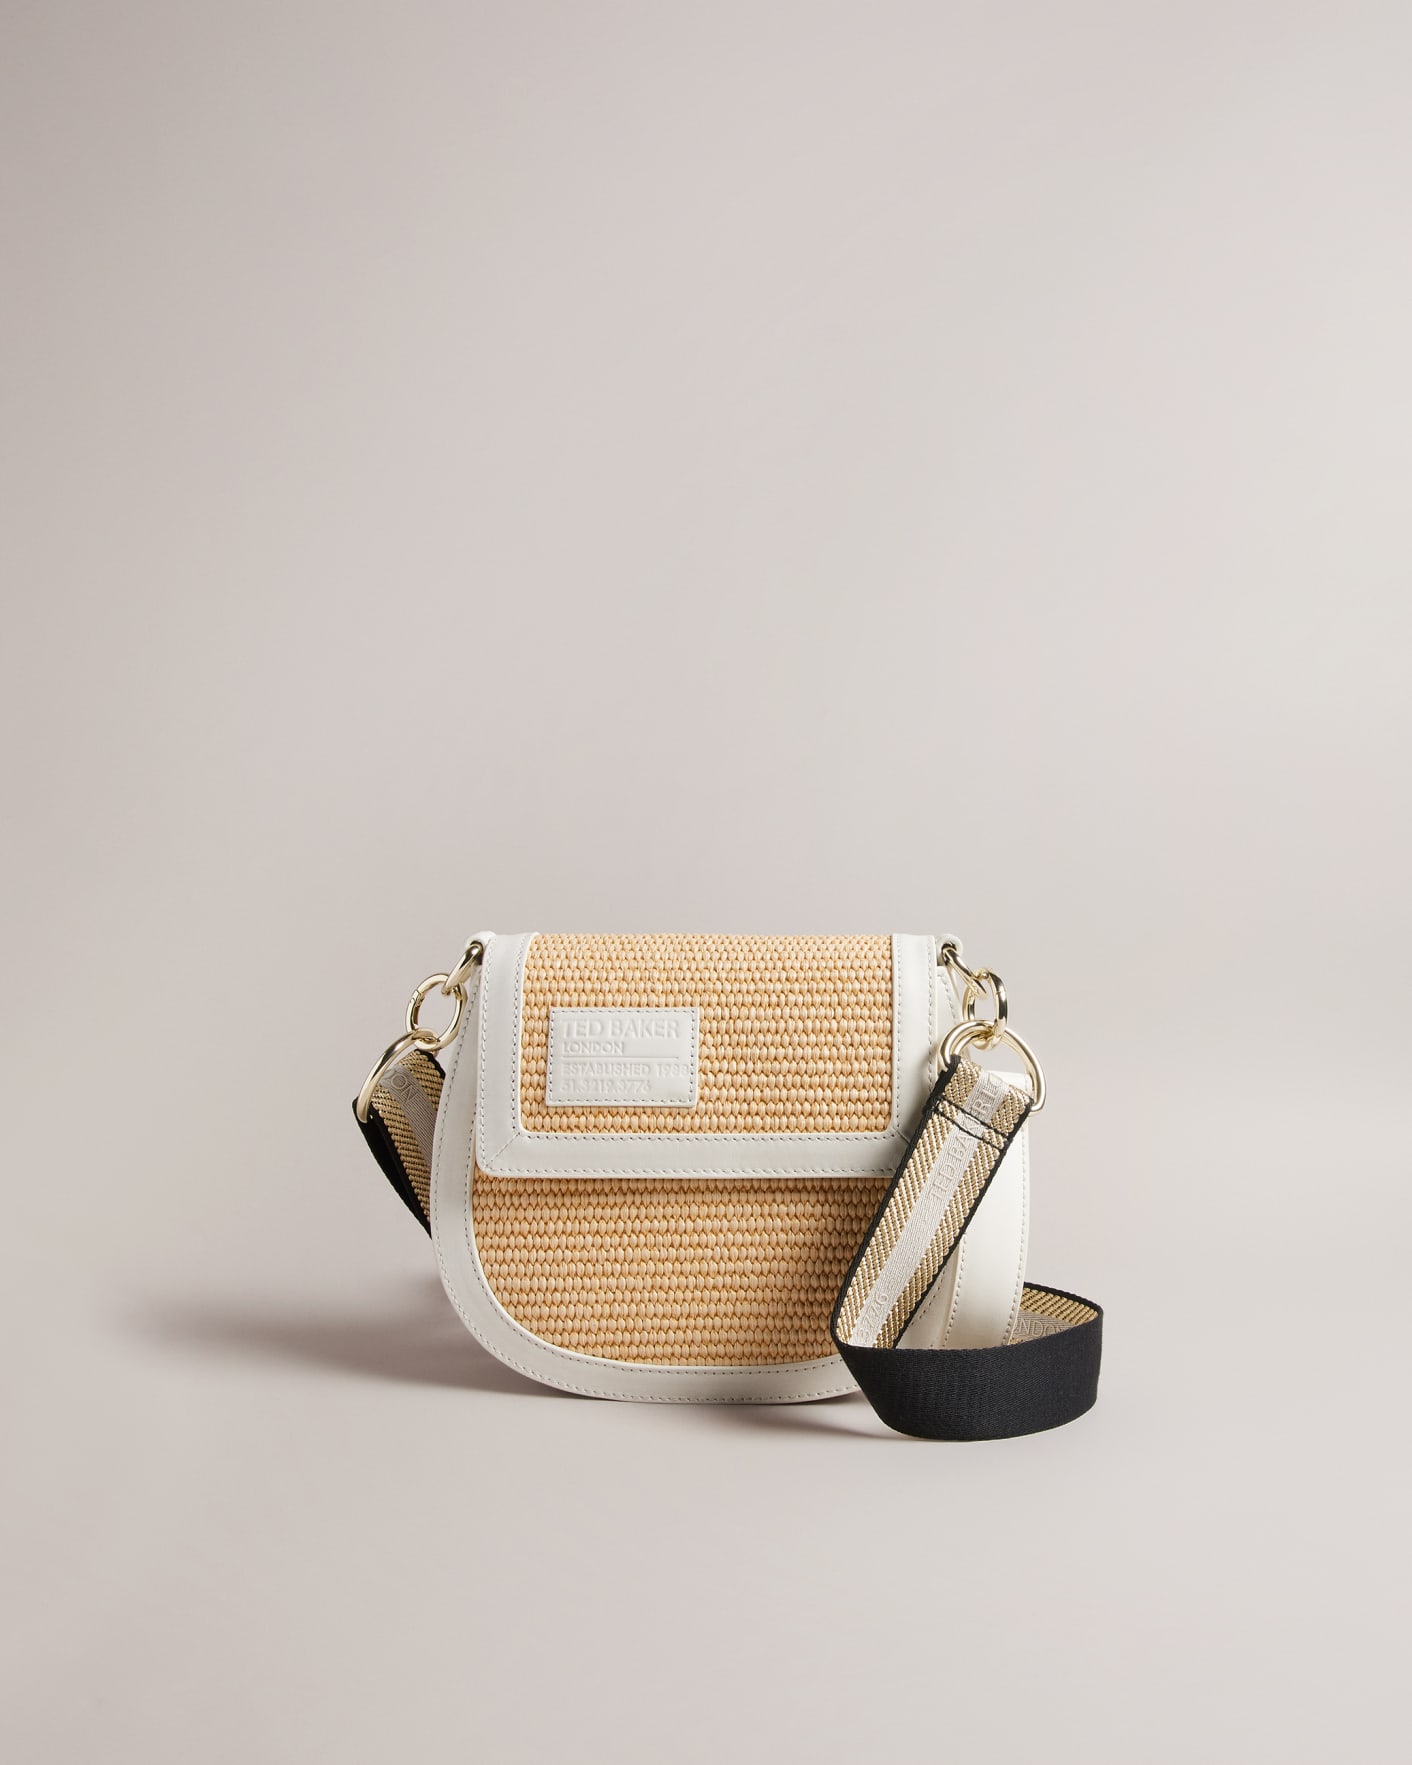 Women's White Ted Baker Handbags, Bags & Purses